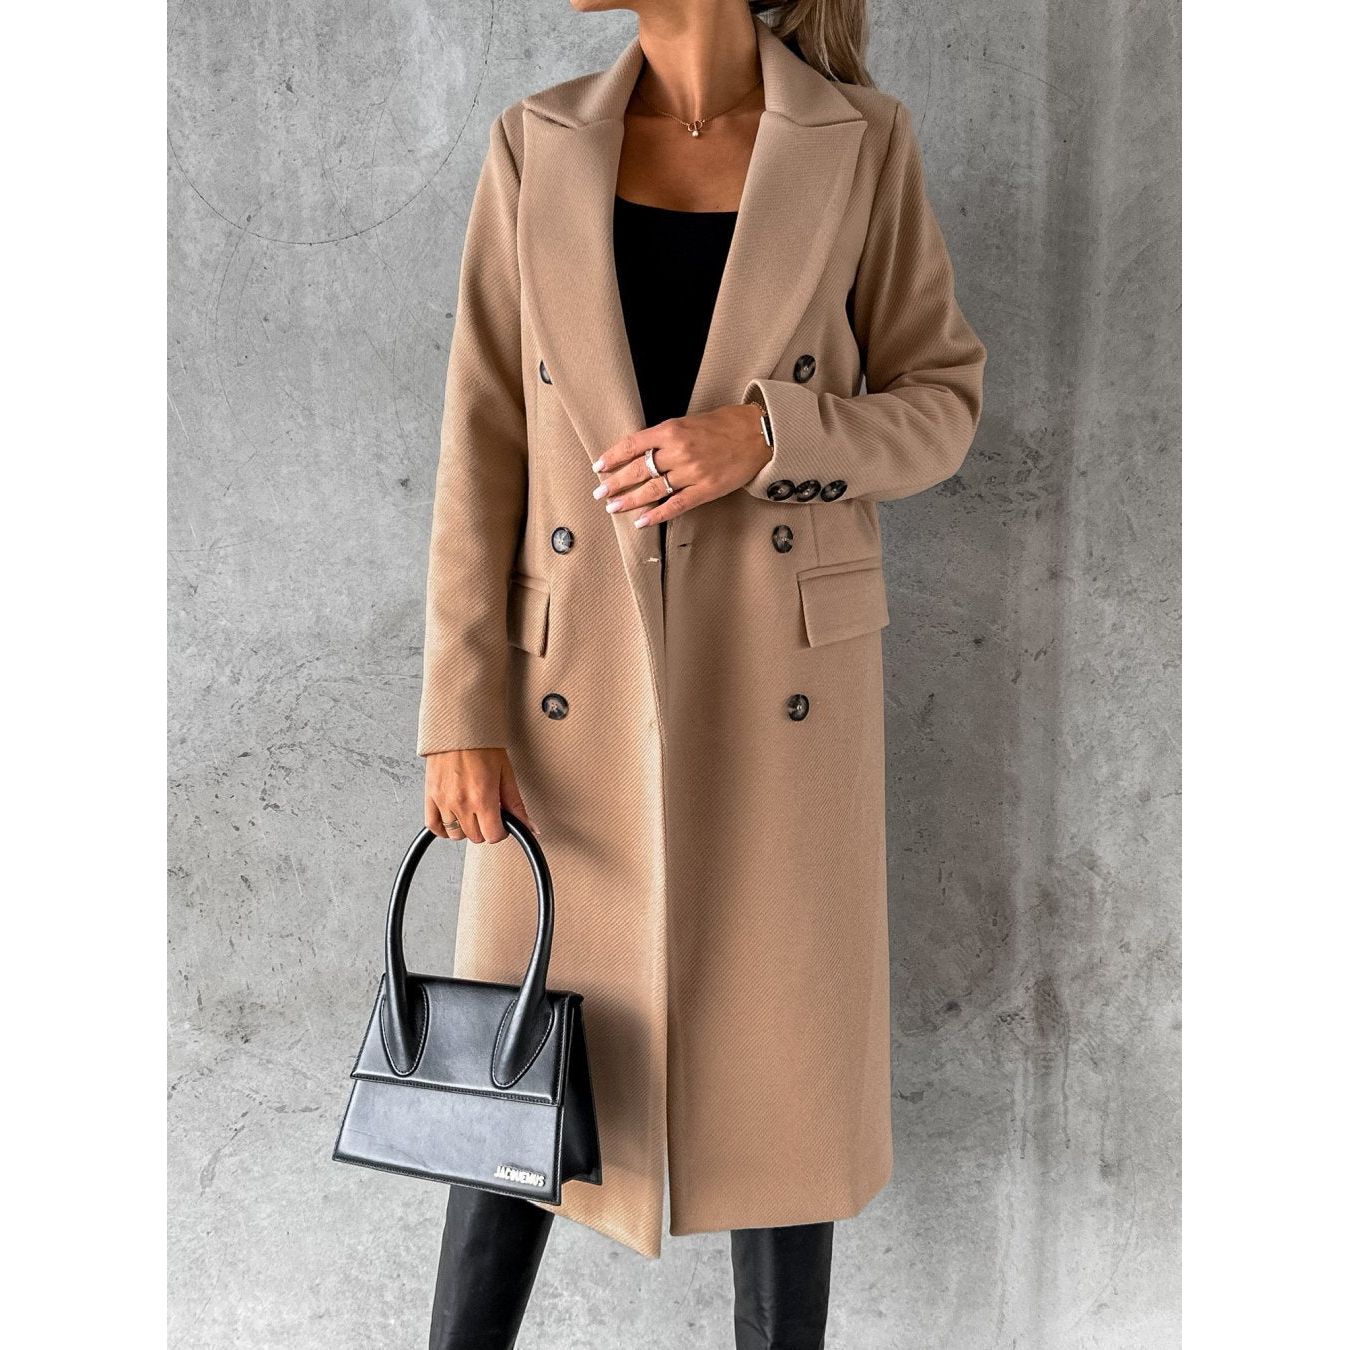 brown long wool winter coat for ladies